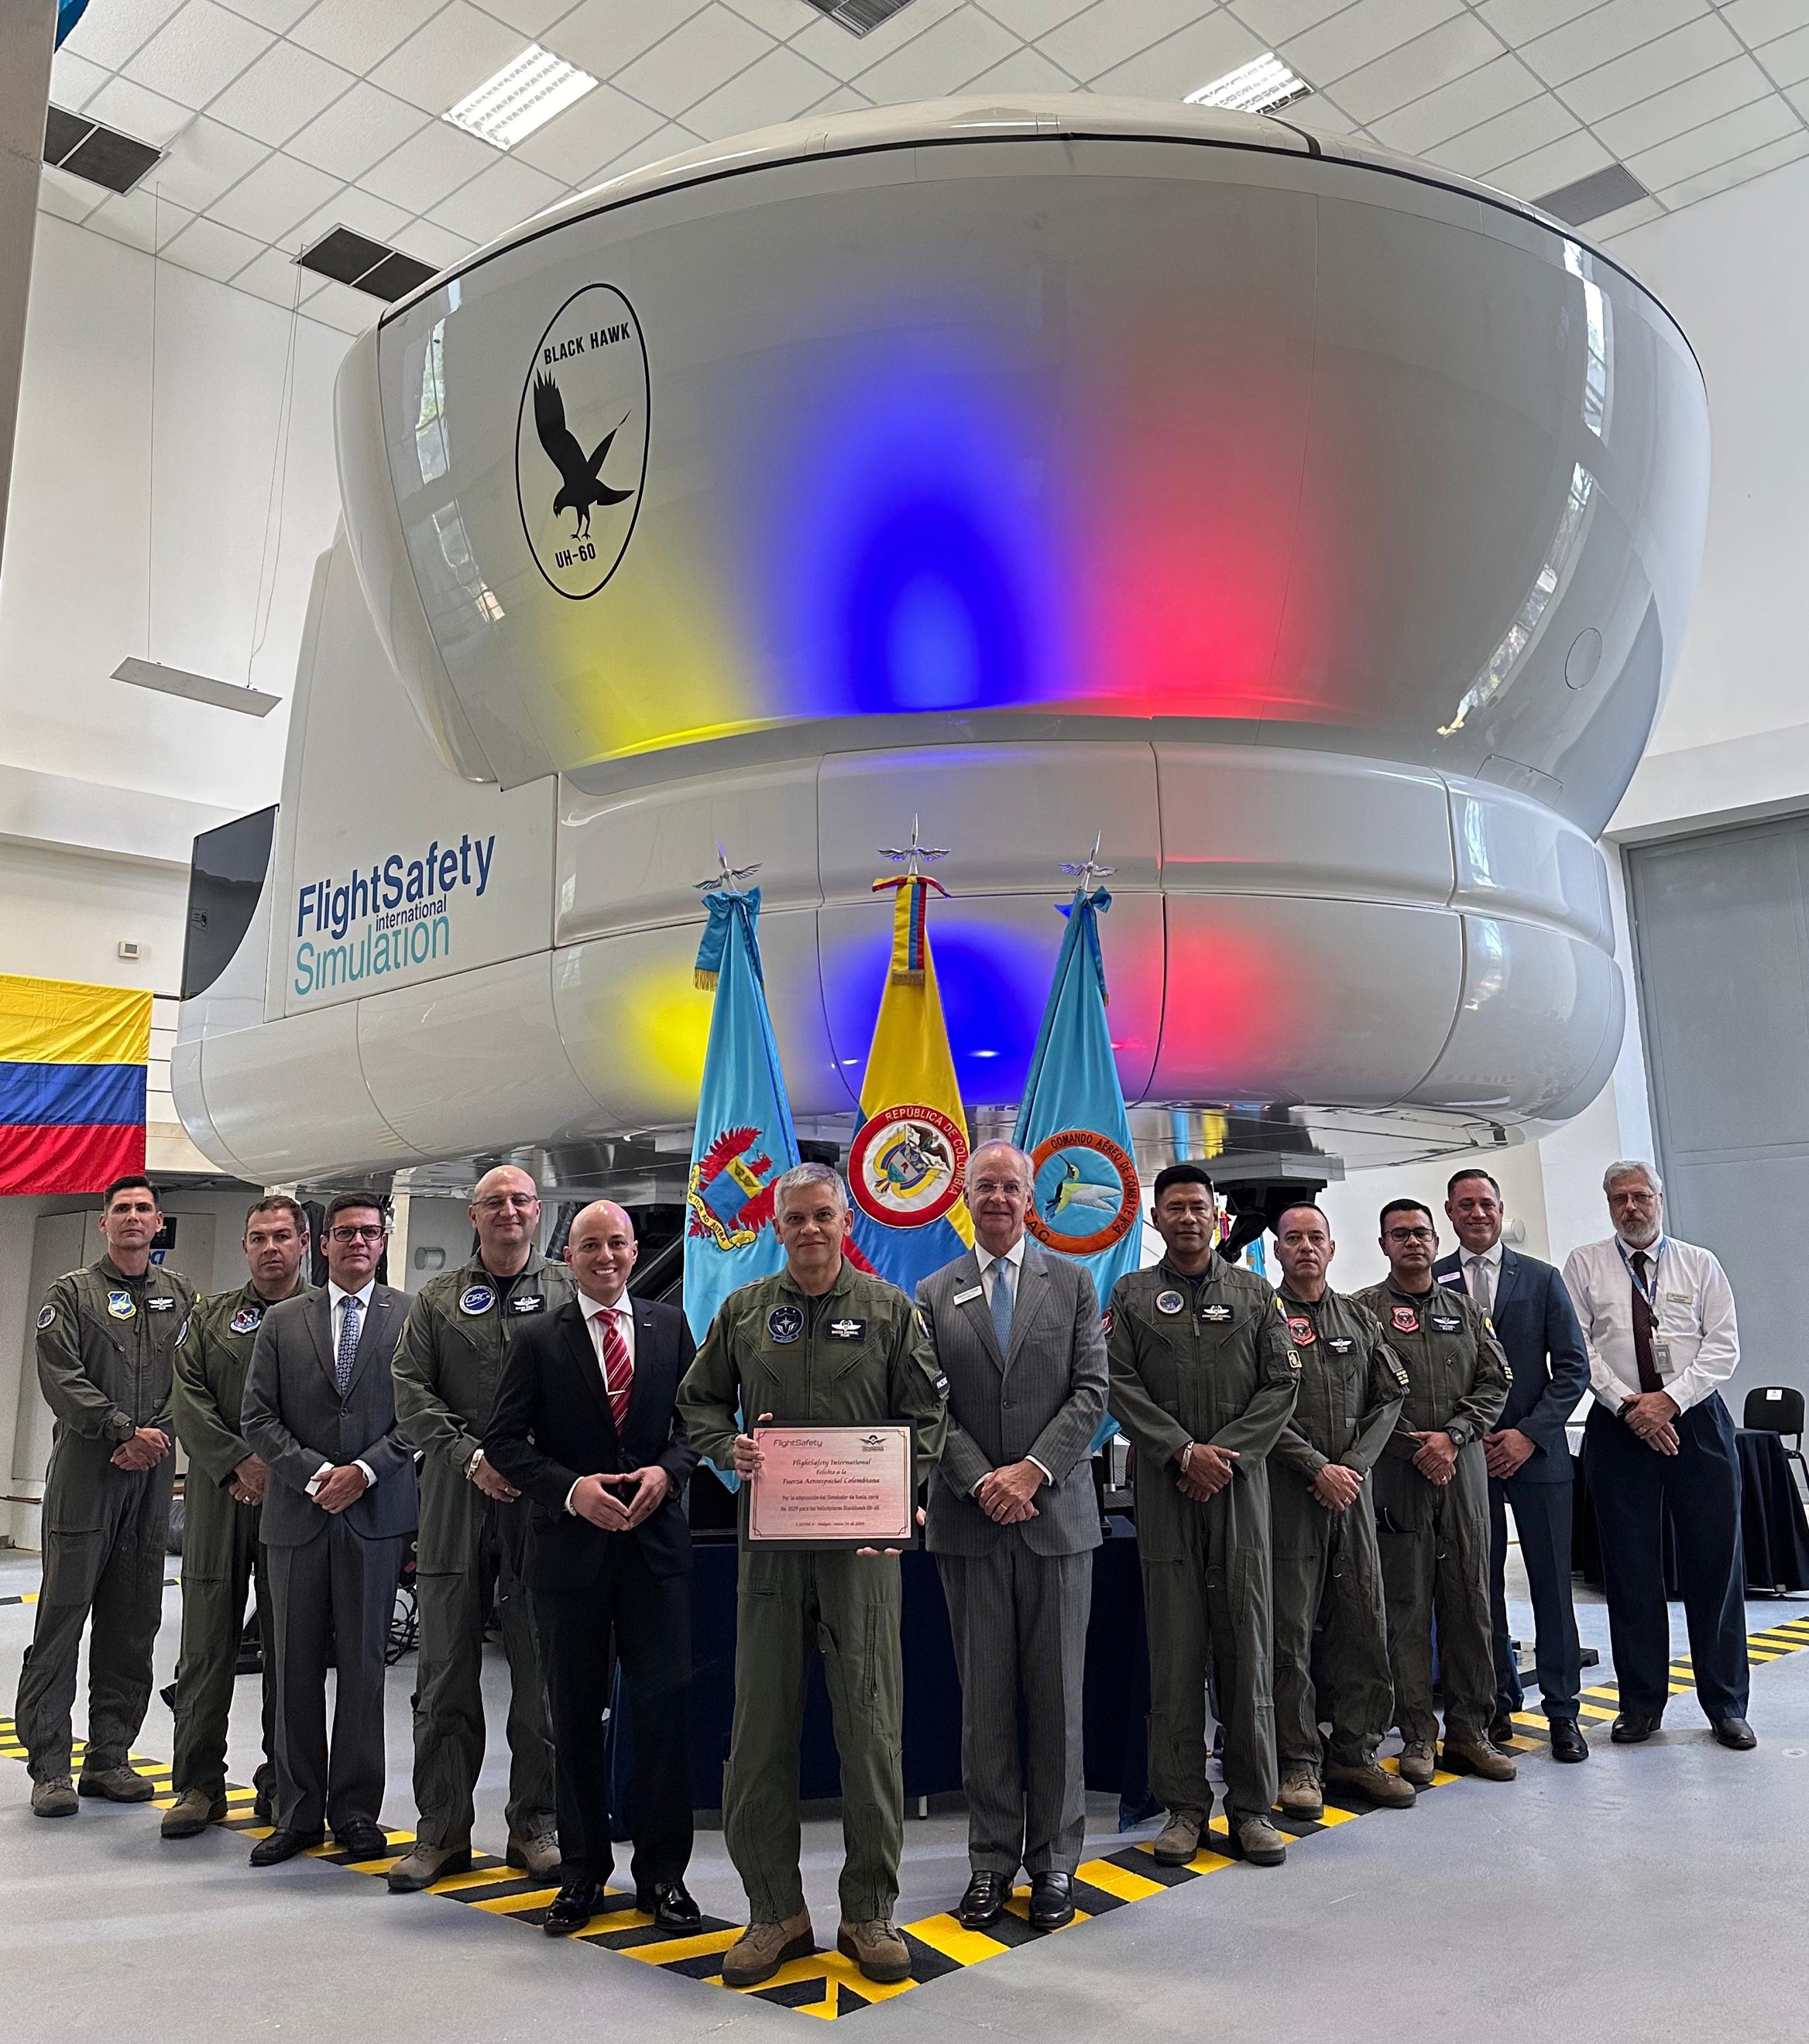 La Fuerza Aeroespacial avanza: simulador UH-60 Black Hawk, impulsa la formación de pilotos en Latinoamérica